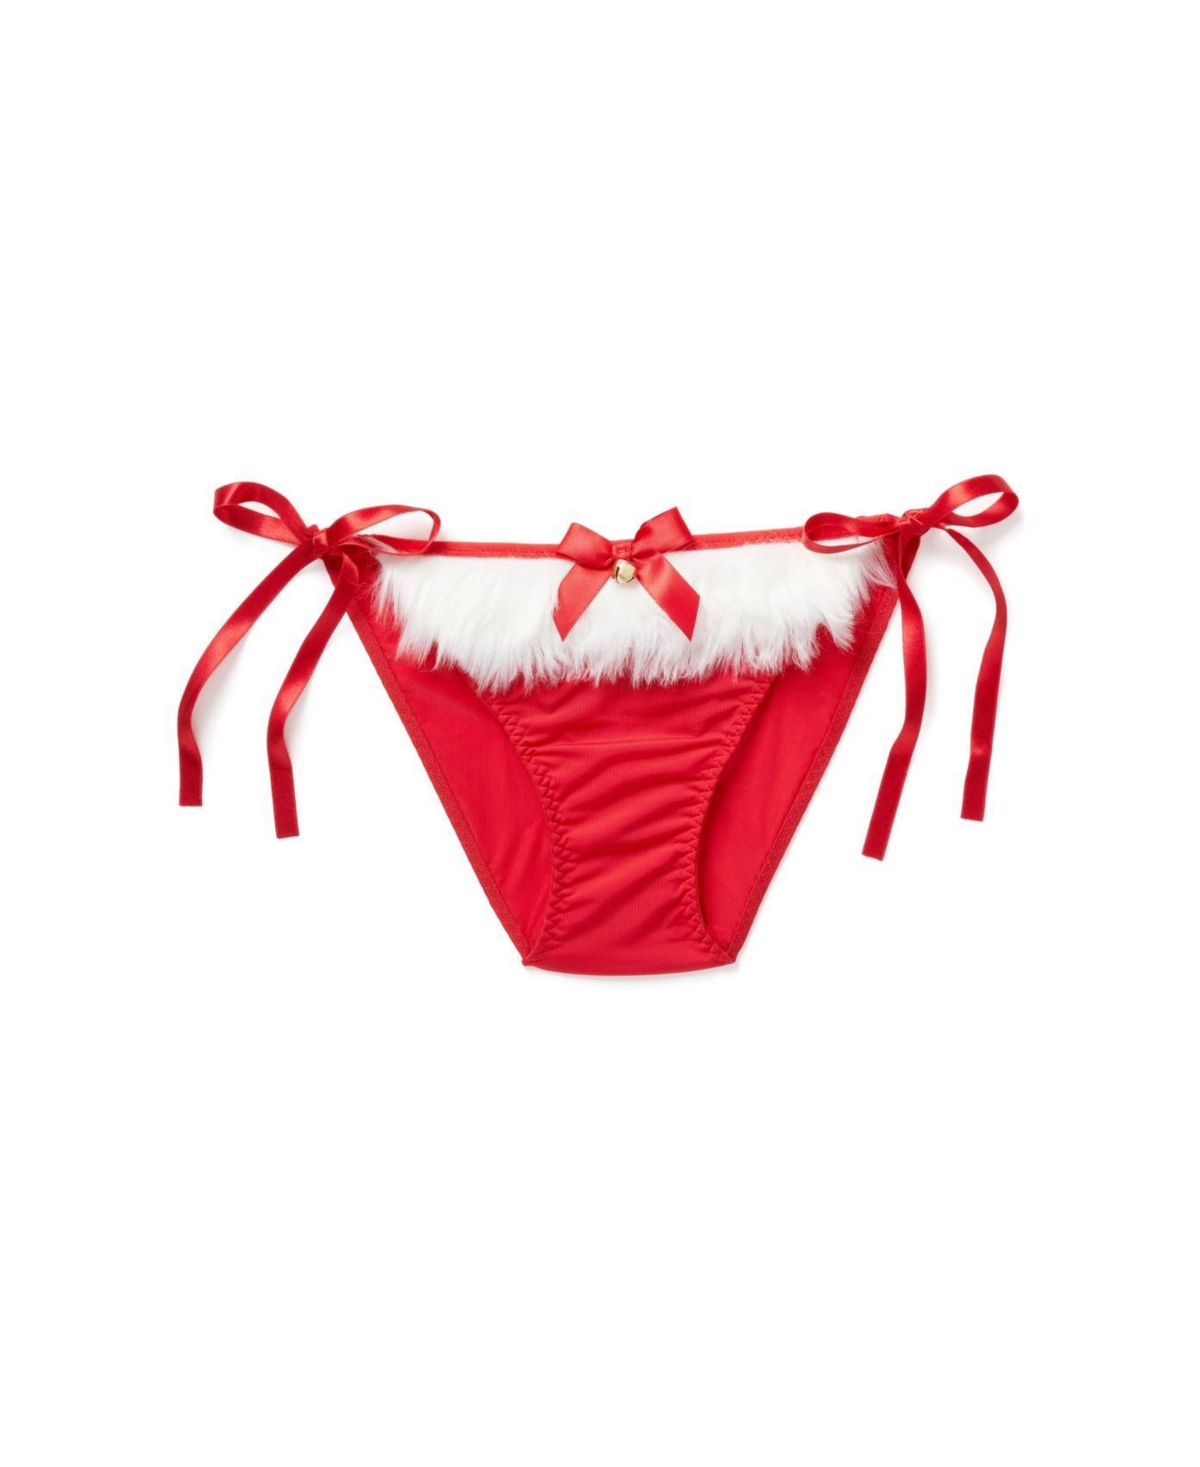 Claussa Women's Bikini Panty - Dark red